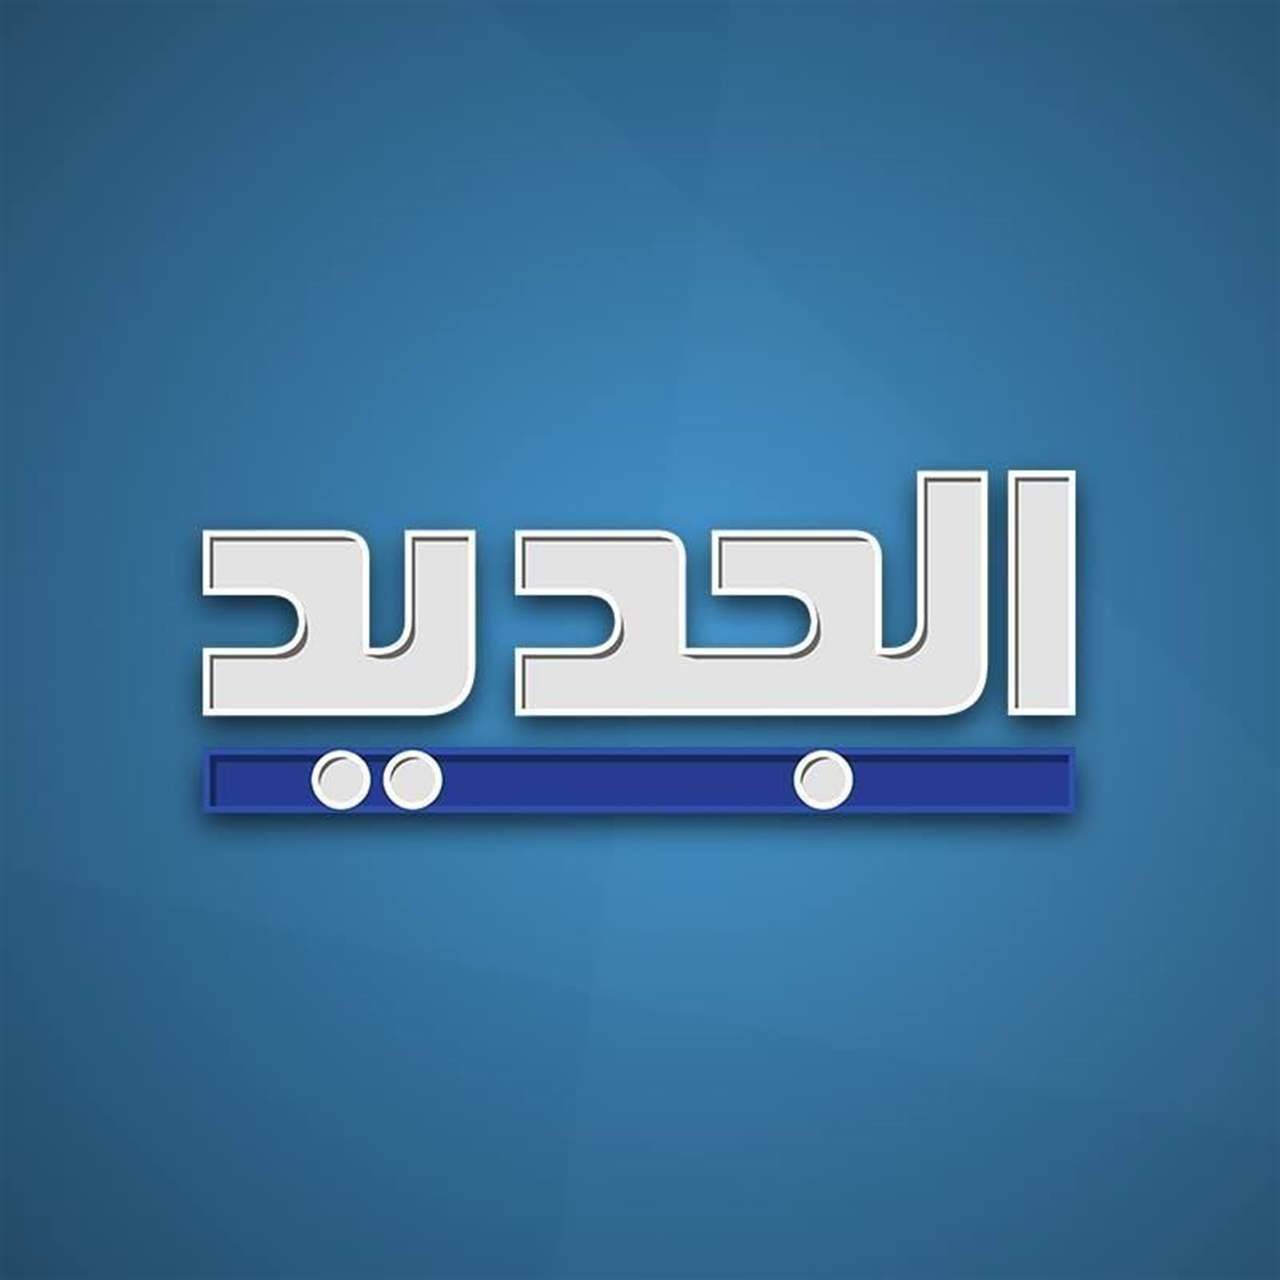 عمليات كر وفر بين مناصرين حزبيين والقوى الأمنية عند جسر الرينغ… لمتابعة البث المباشر لقناة الجديد على الرابط التالي: